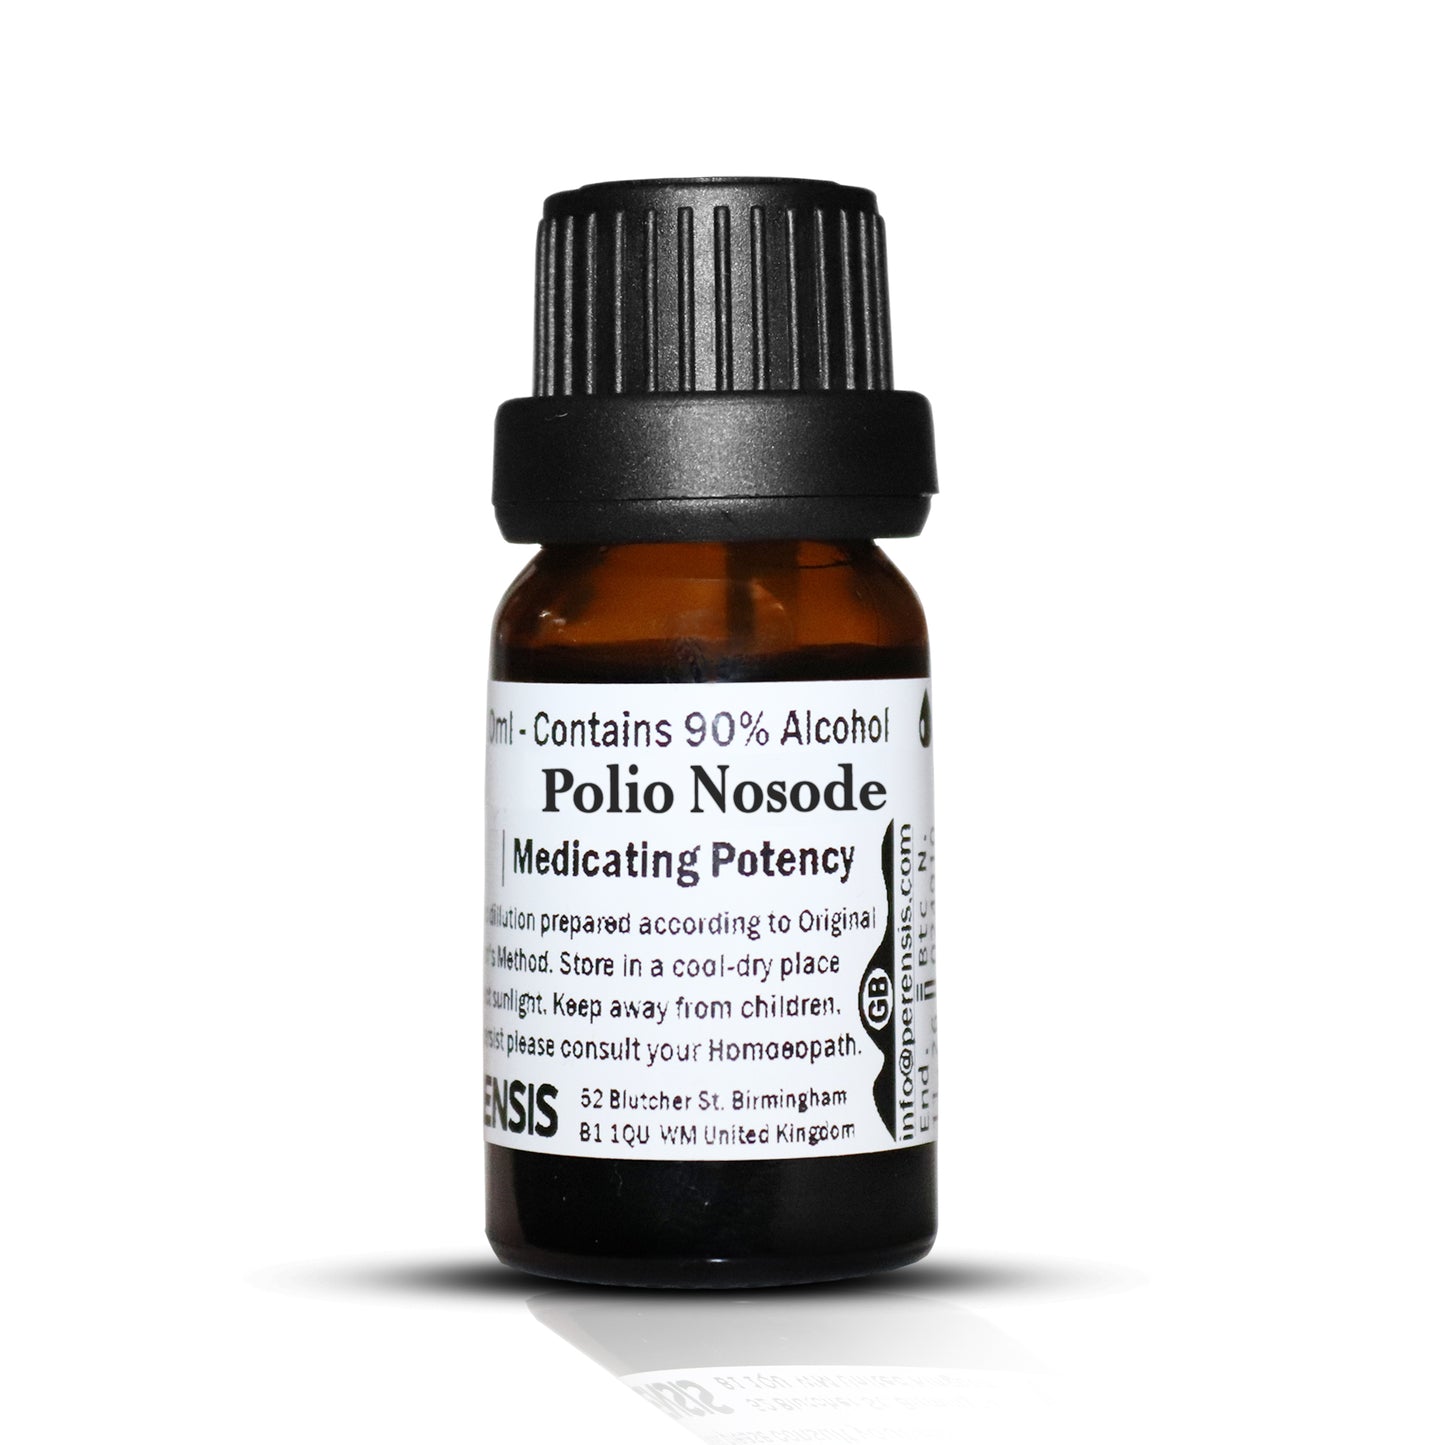 Polio Nosode